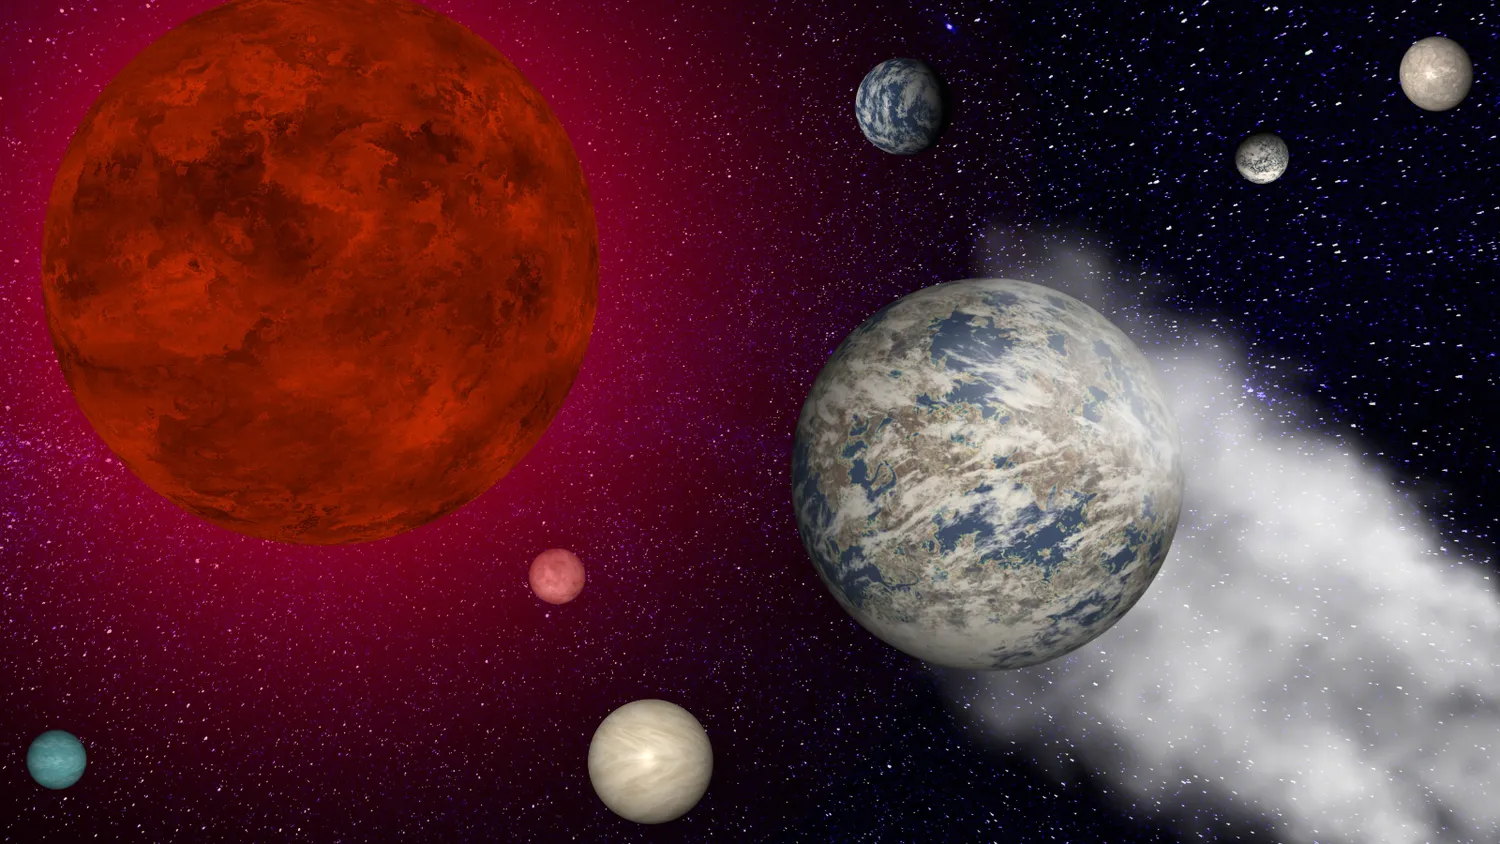 Eine Illustration von Trappist-1e zeigt den potenziell bewohnbaren Exoplaneten, der durch die starke Strahlung seines roten Zwergsterns seiner Atmosphäre beraubt wird, während seine Planetengeschwister zusehen